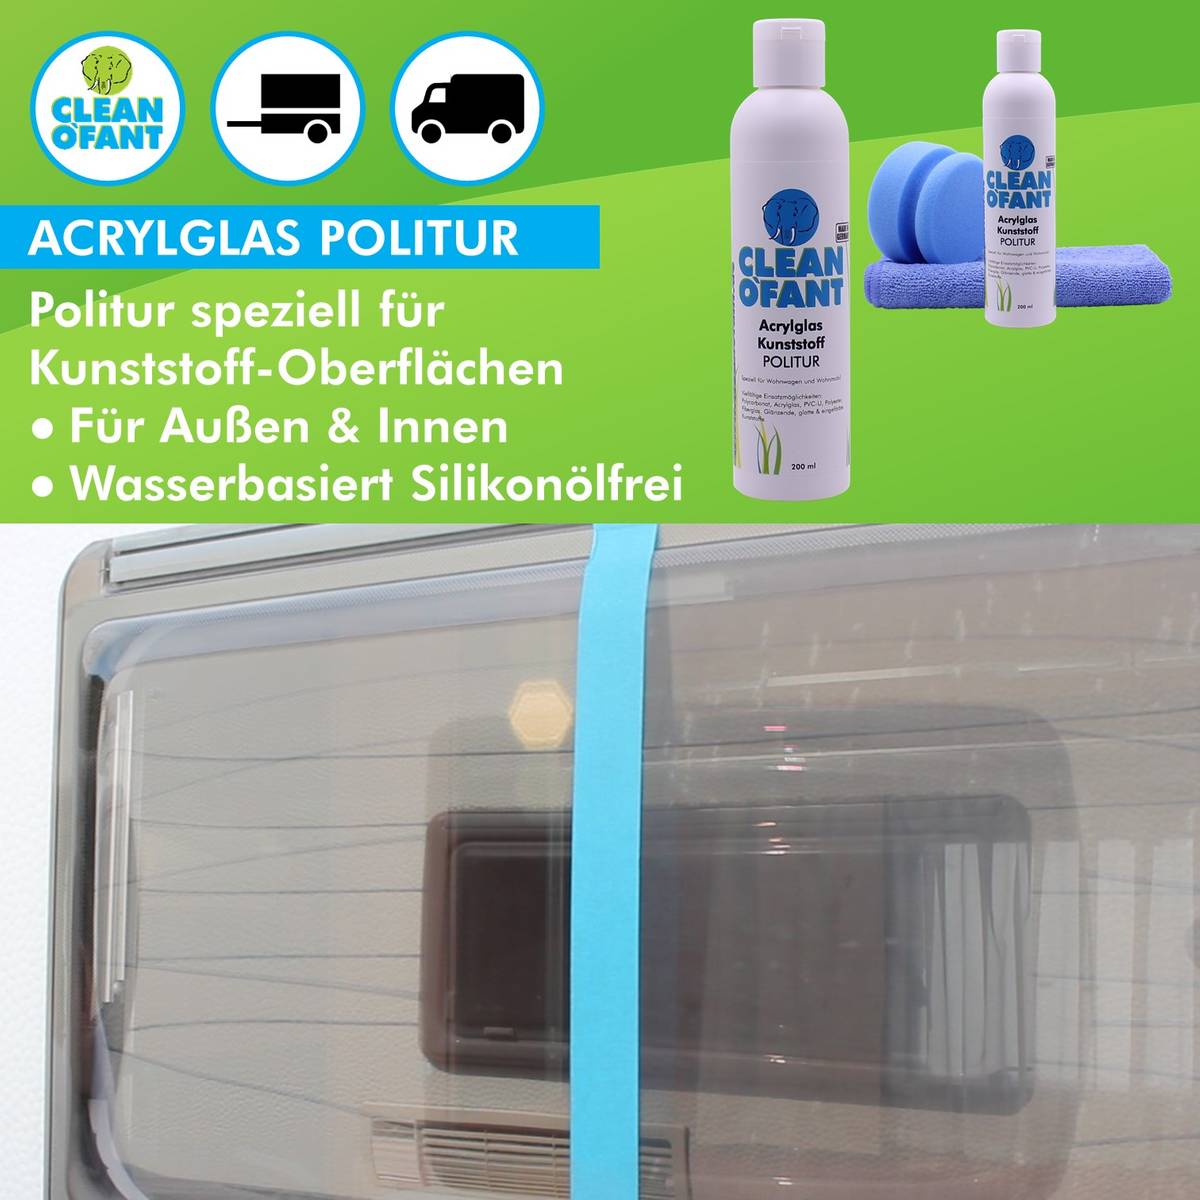 Acrylglas-Kunststoff-POLITUR 200 ml - CLEANOFANT